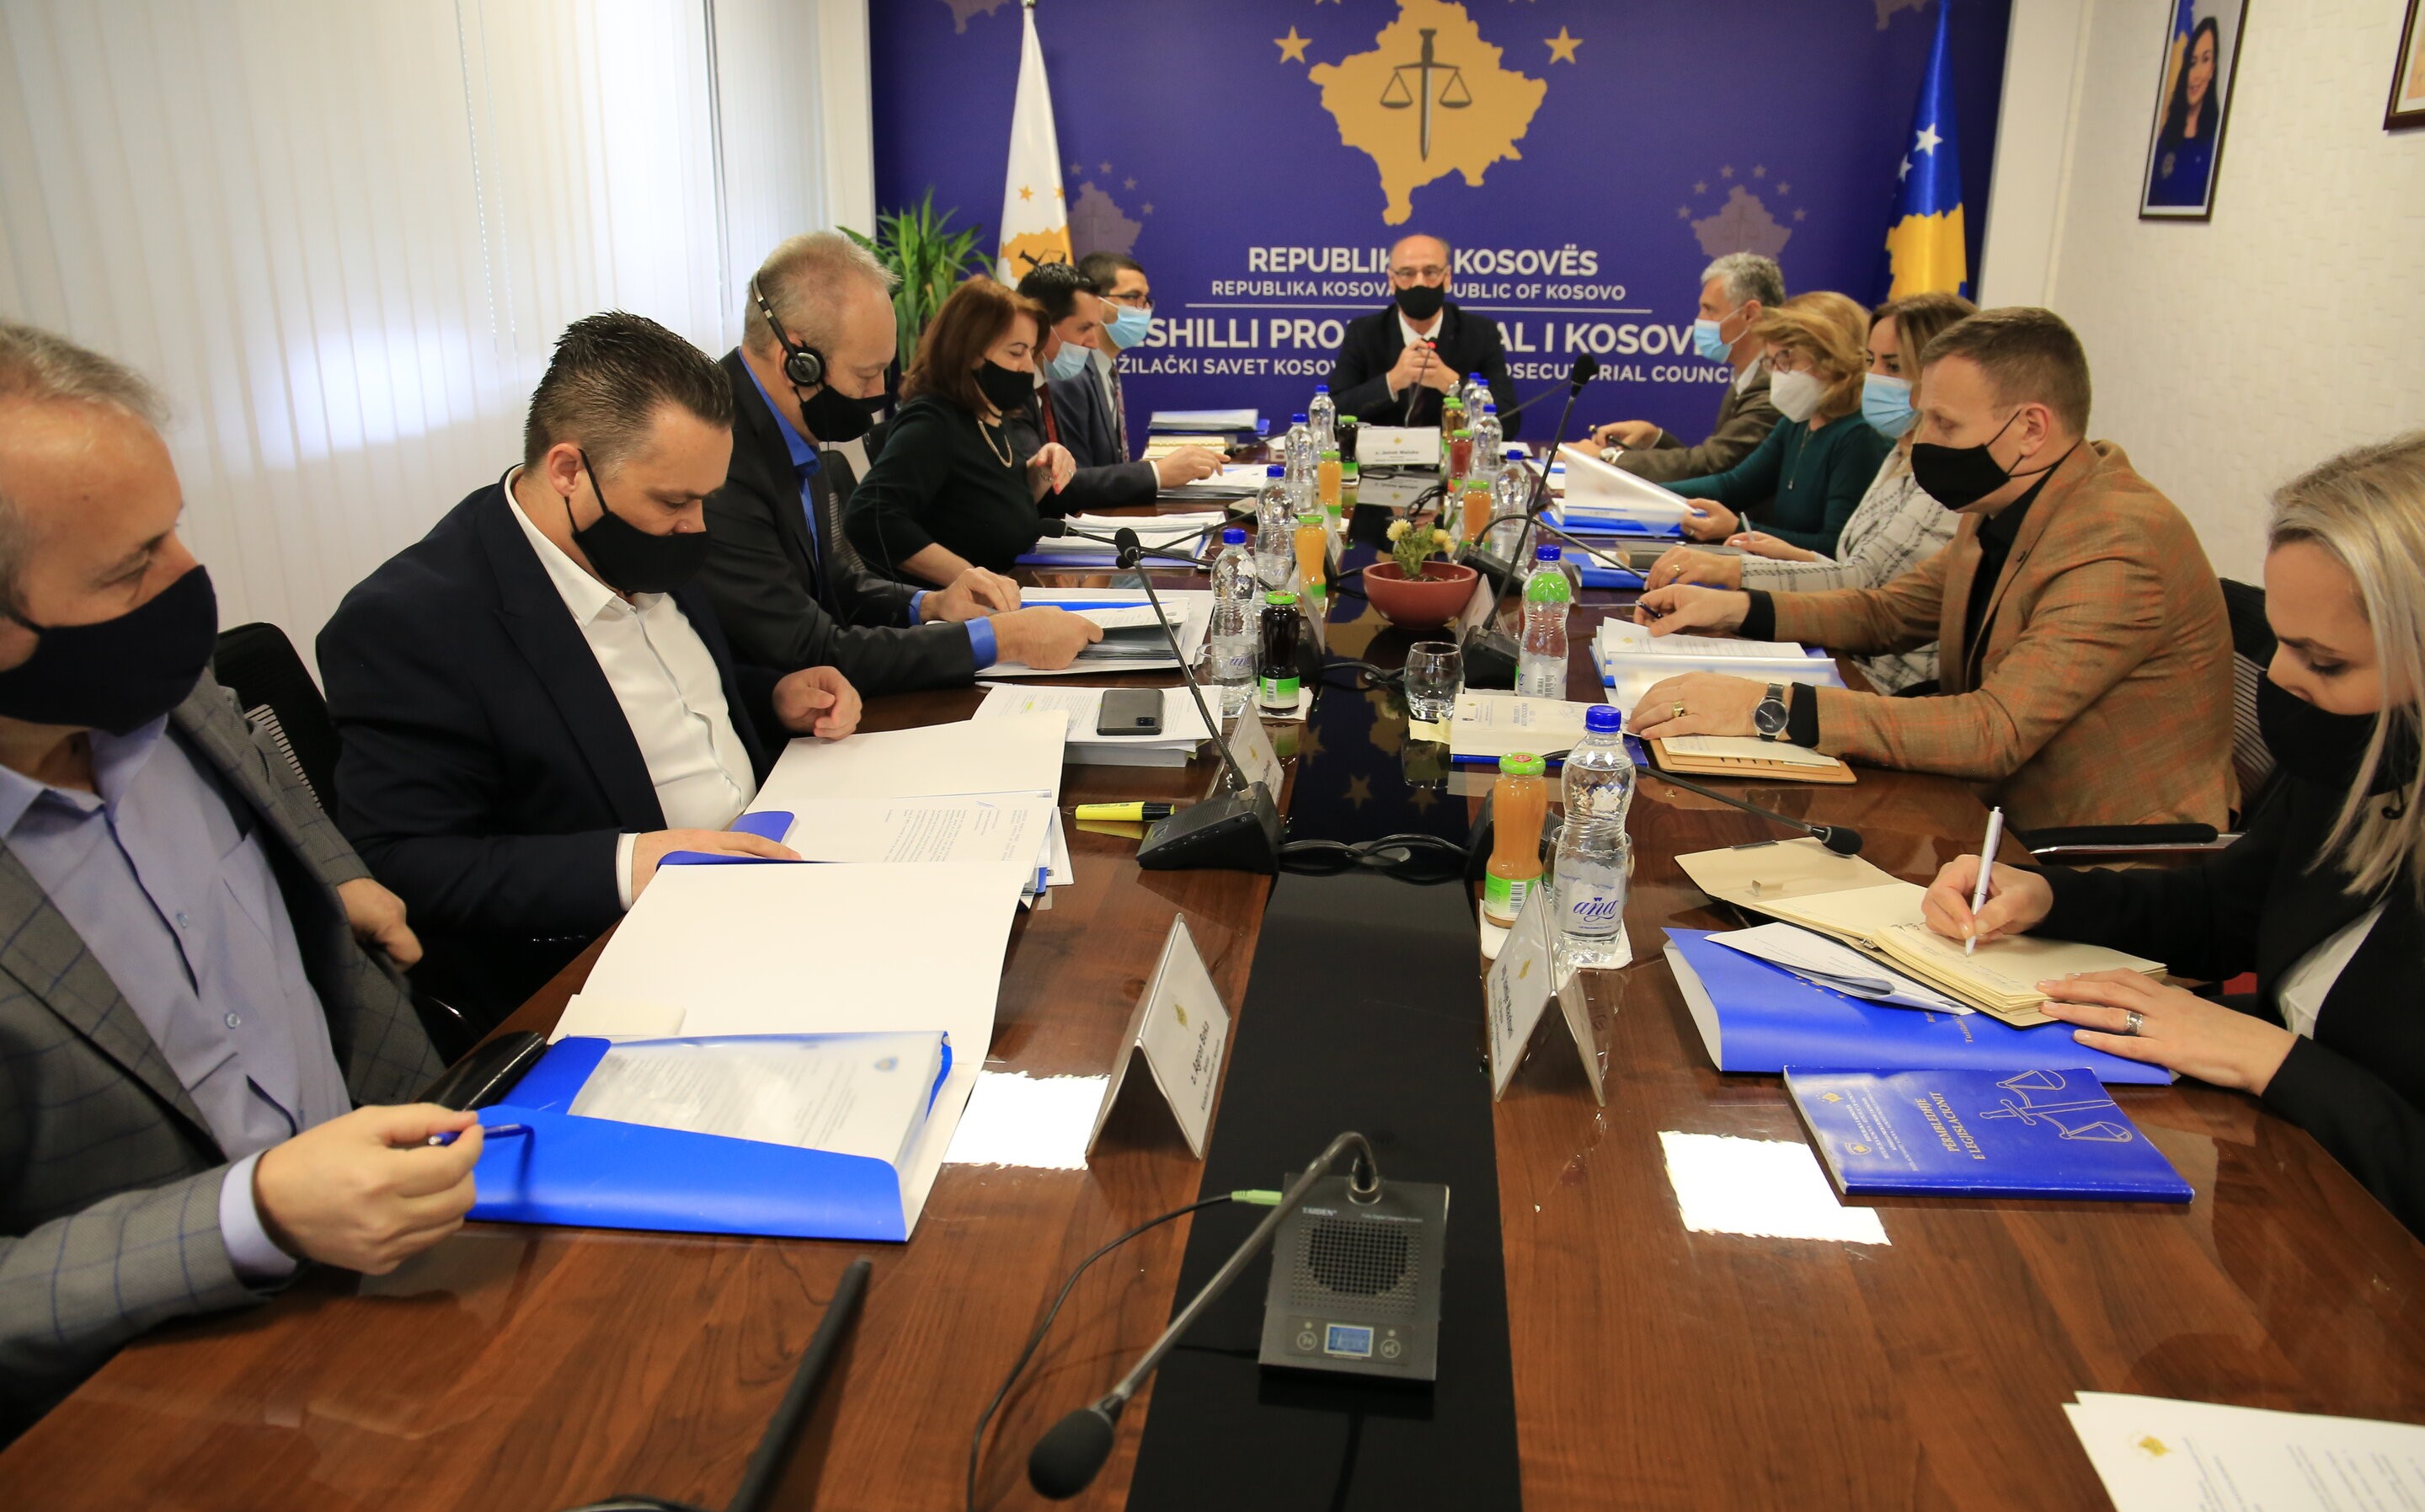 Këshilli Prokurorial i Kosovës siguron transparencë në procesin e zgjedhjes së Kryeprokurorit të ri të Shtetit